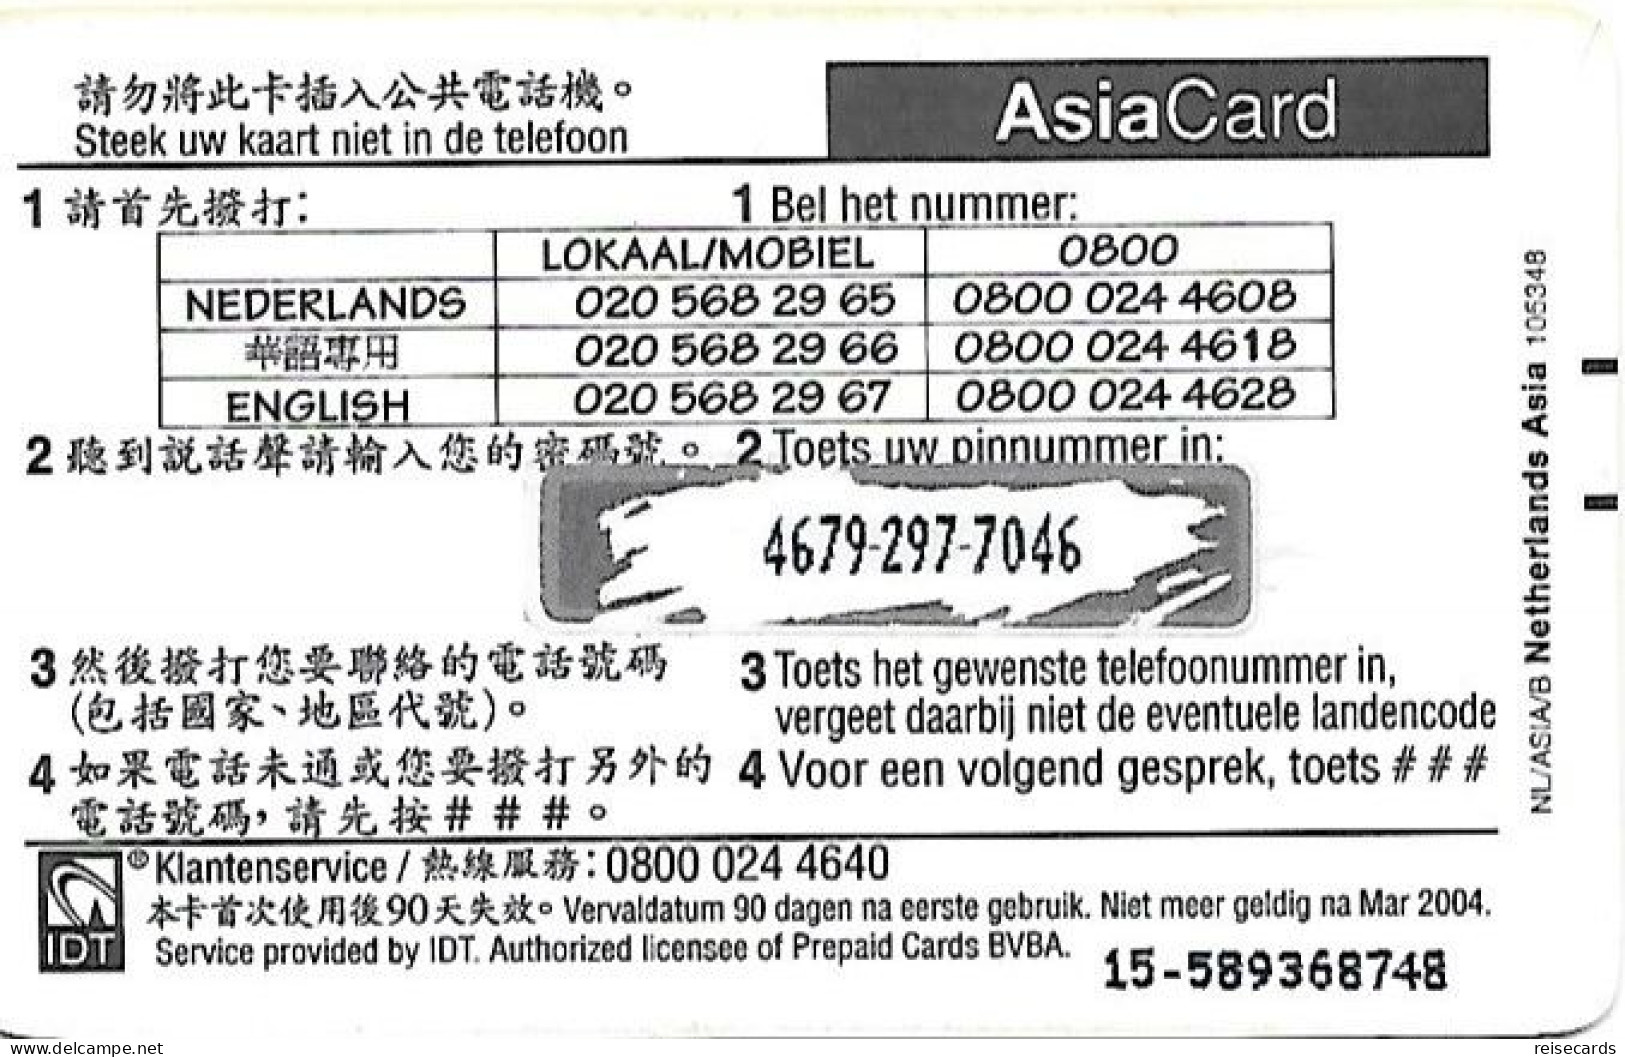 Netherlands: Prepaid IDT - Asia Card 03.04 - GSM-Kaarten, Bijvulling & Vooraf Betaalde